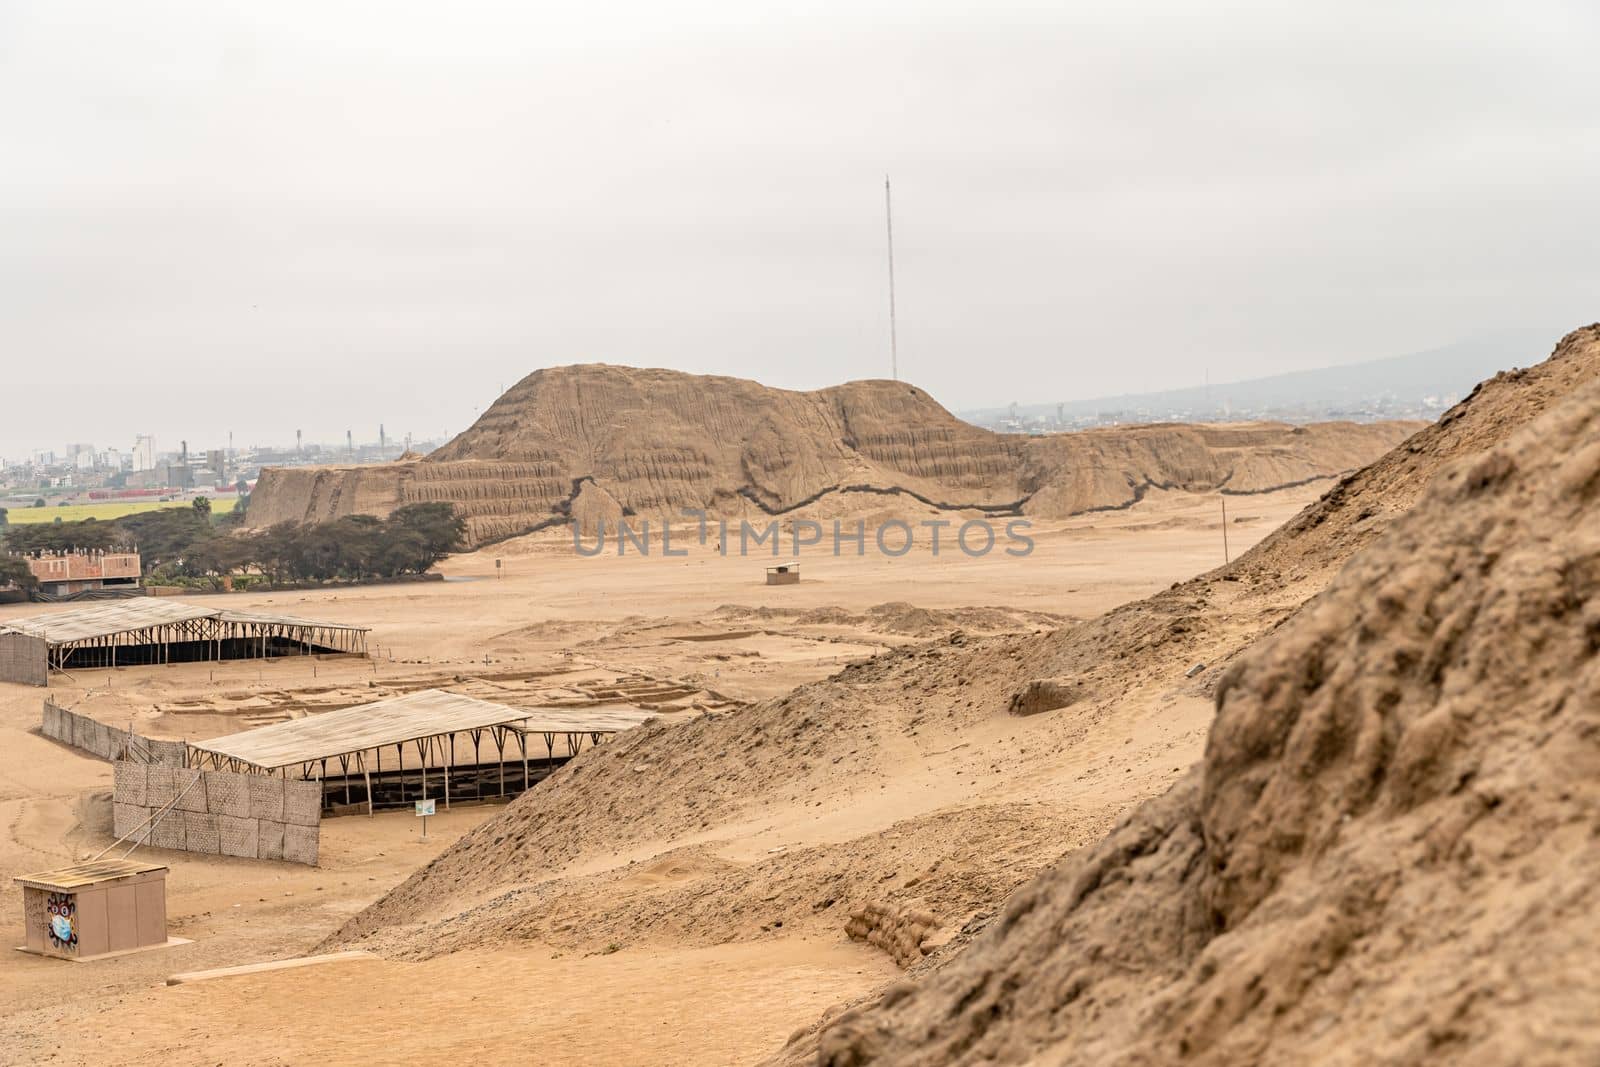 Huaca de la Luna archaeological site in Peru near Trujillo. 